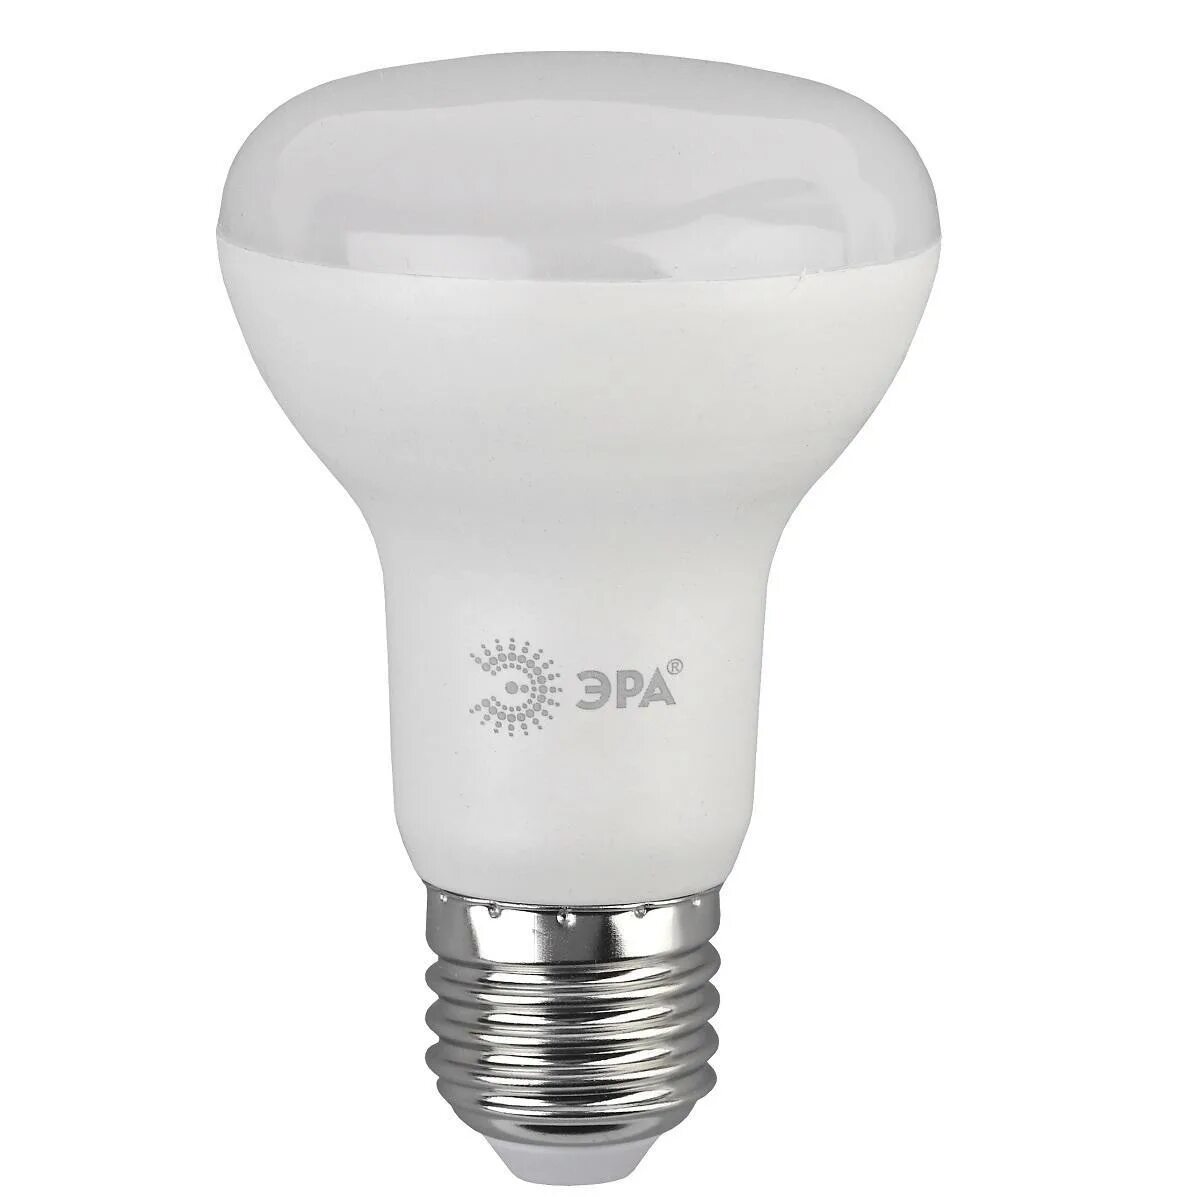 Лампа светодиодная IEK g45 шар e14 7 Вт 4000к свет холодный белый. General лампа светодиодная g45f-7вт-230-e14-6500 (10/100). Лампа General led-p45. Лампа светодиодная General 10w e27 6500k шар.